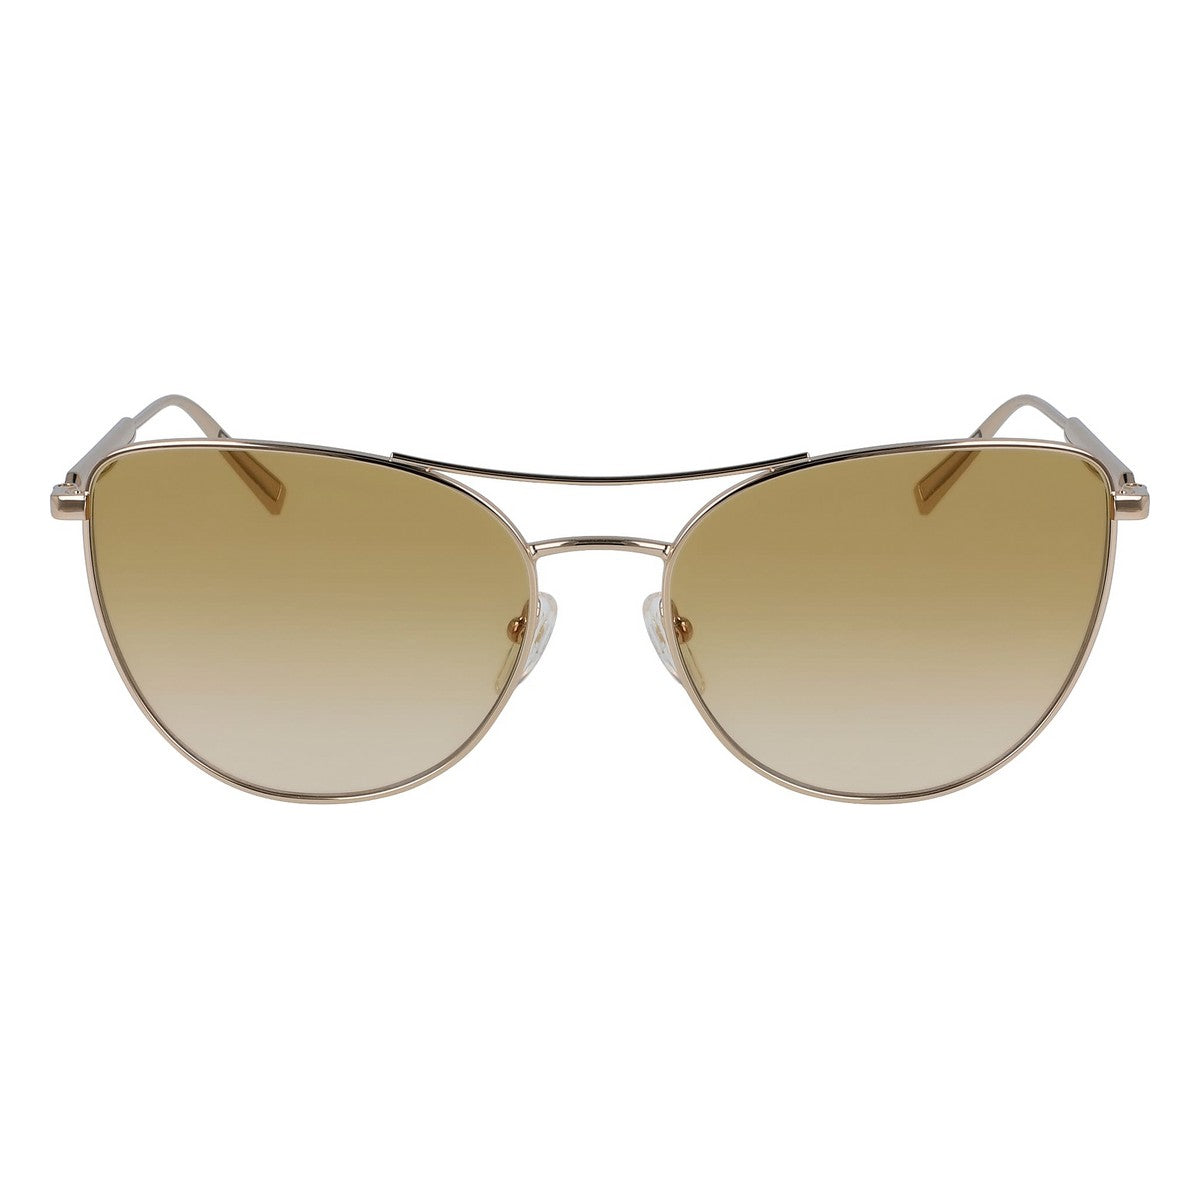 Kaufe Damensonnenbrille Longchamp LO134S-728 ø 58 mm bei AWK Flagship um € 69.00